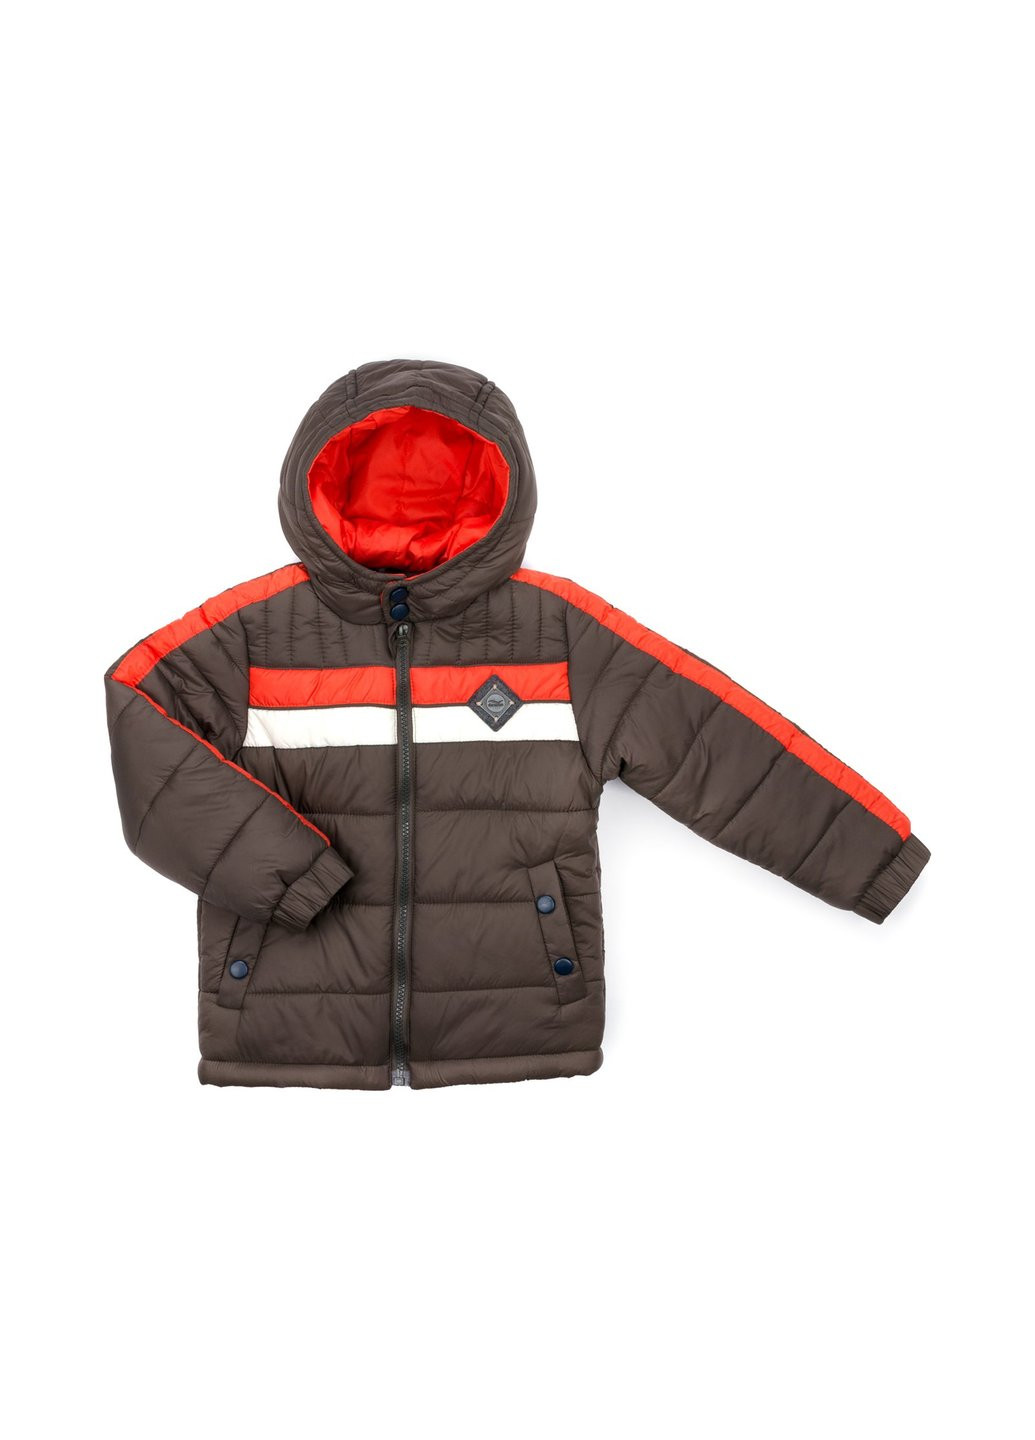 Коричневая зимняя куртка с оранжевой полосой (2663-116b-brown) Verscon